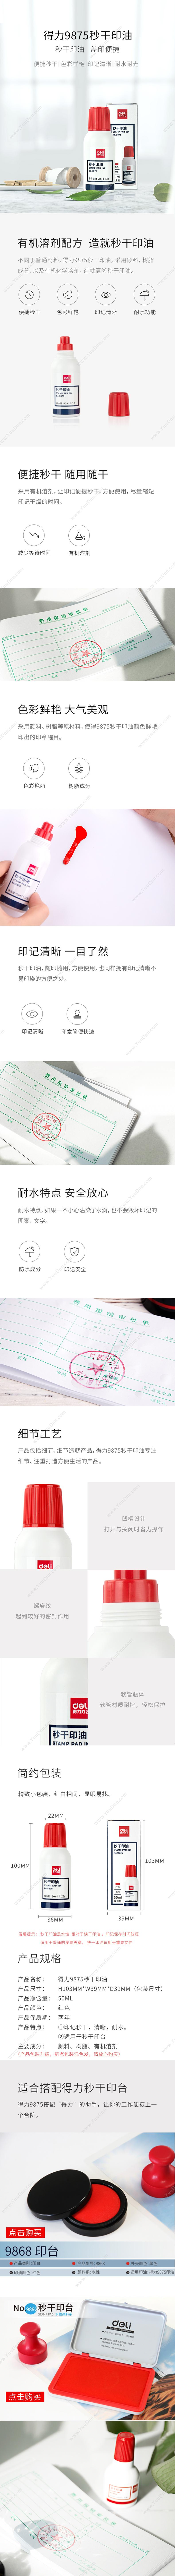 蝉之翼 chanzhiyi 7233 创意T型台签 桌牌 座位牌 桌面展示牌